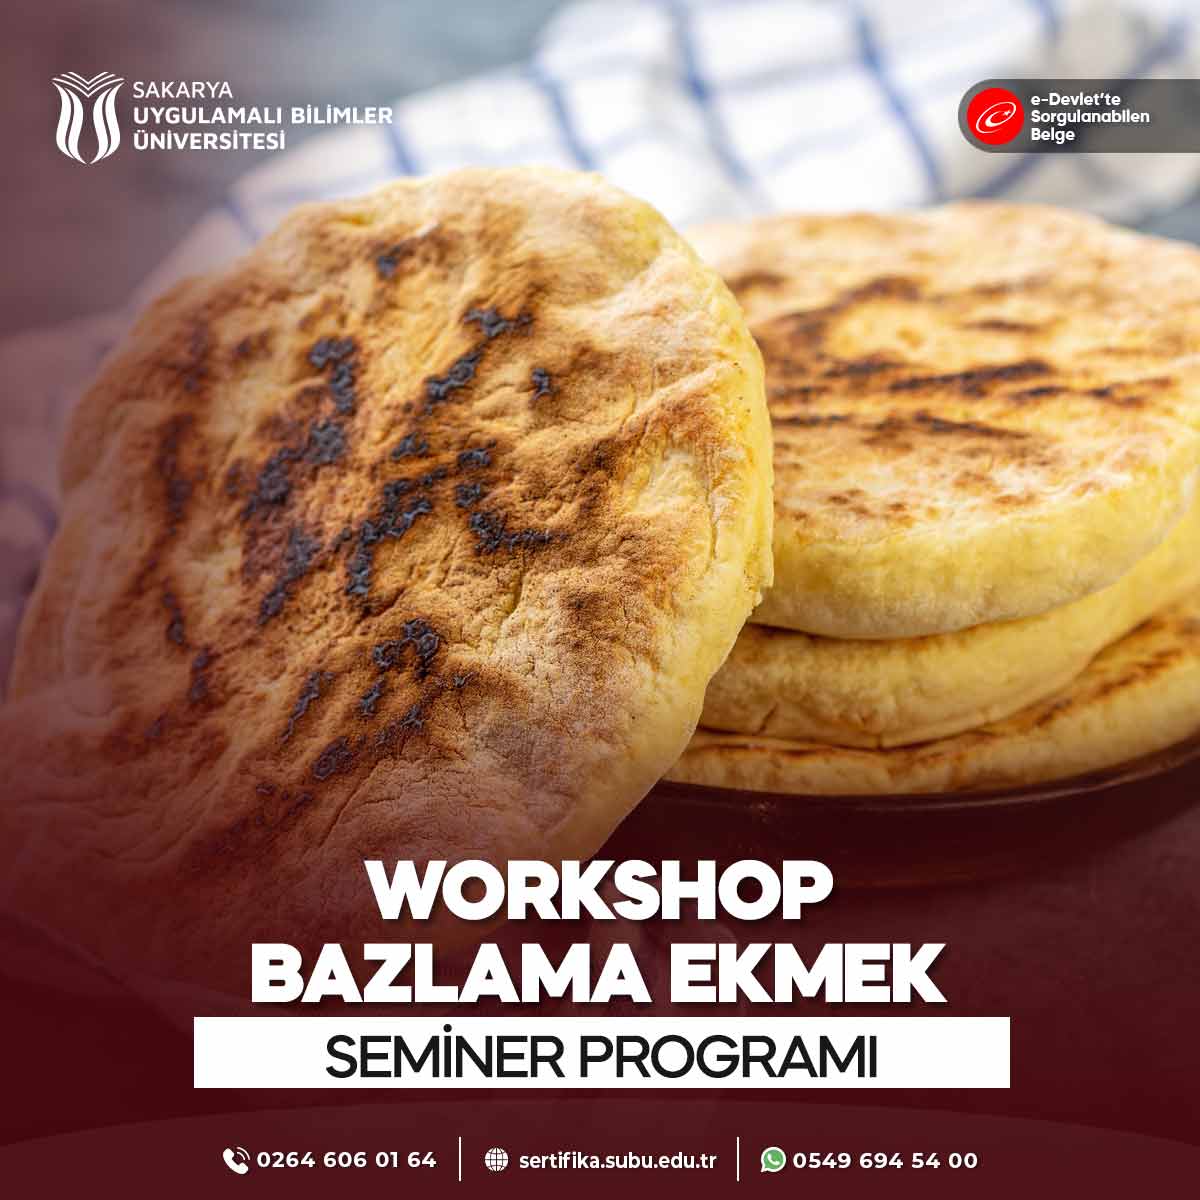 Workshop - Bazlama Ekmek Semineri